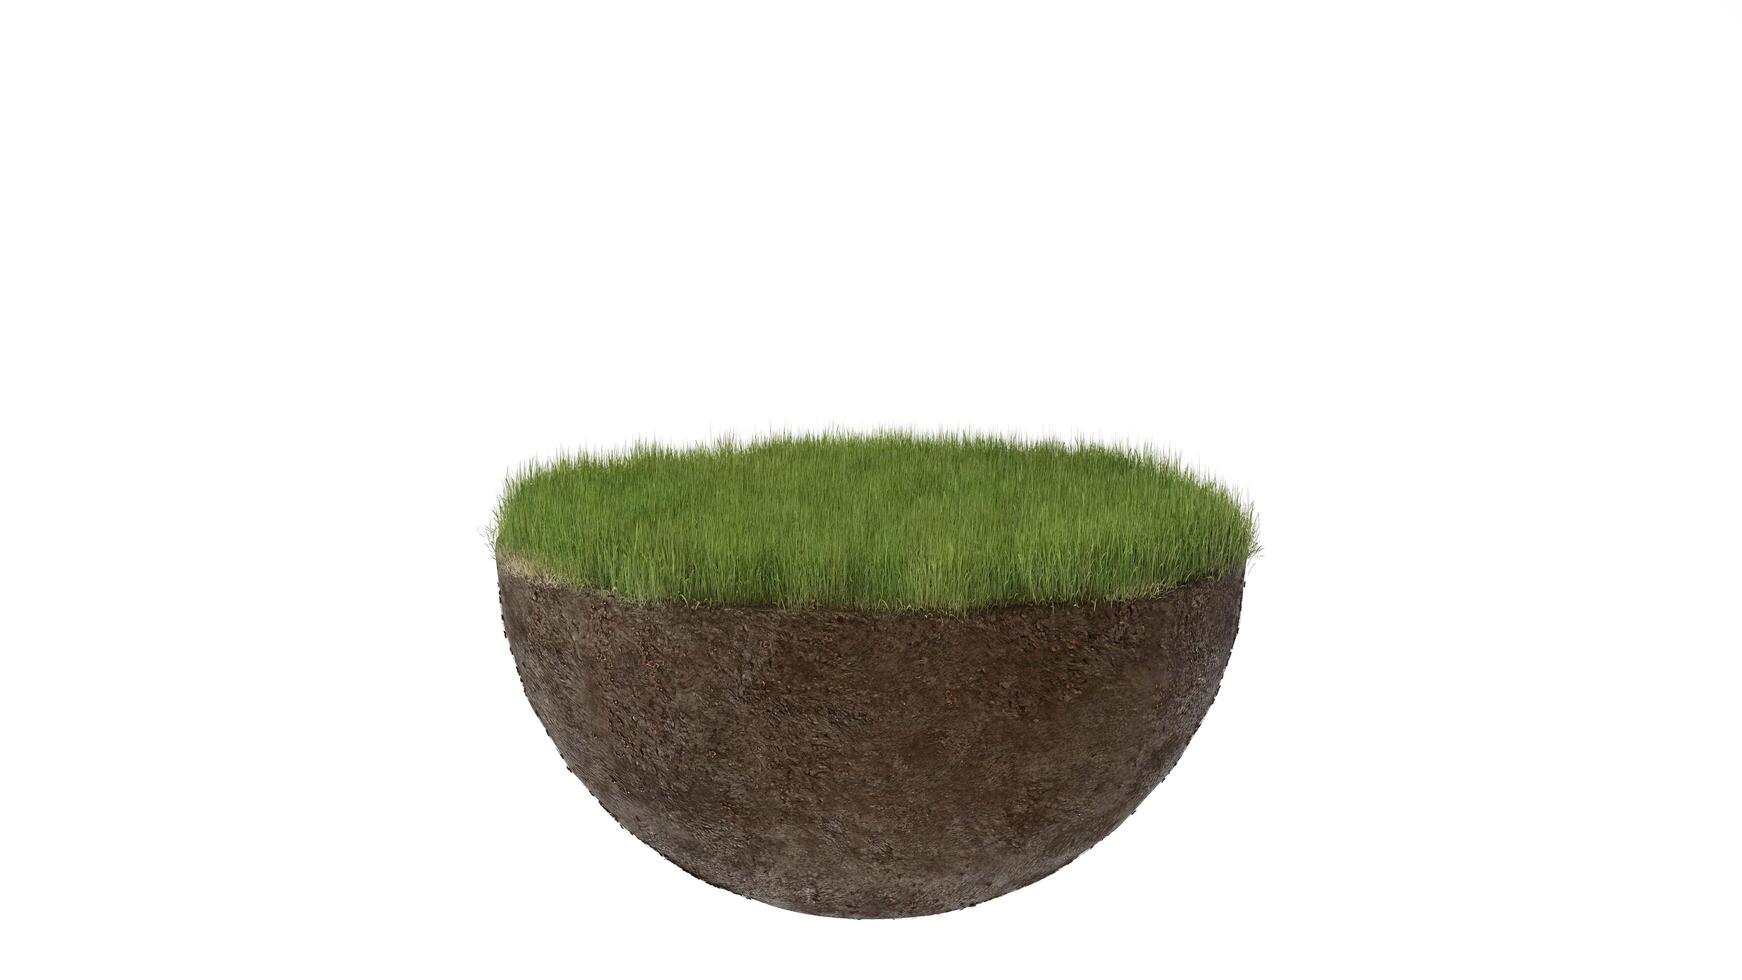 fundo abstrato do chão do terreno de maquete com sujeira e grama, renderização de ilustração 3d foto